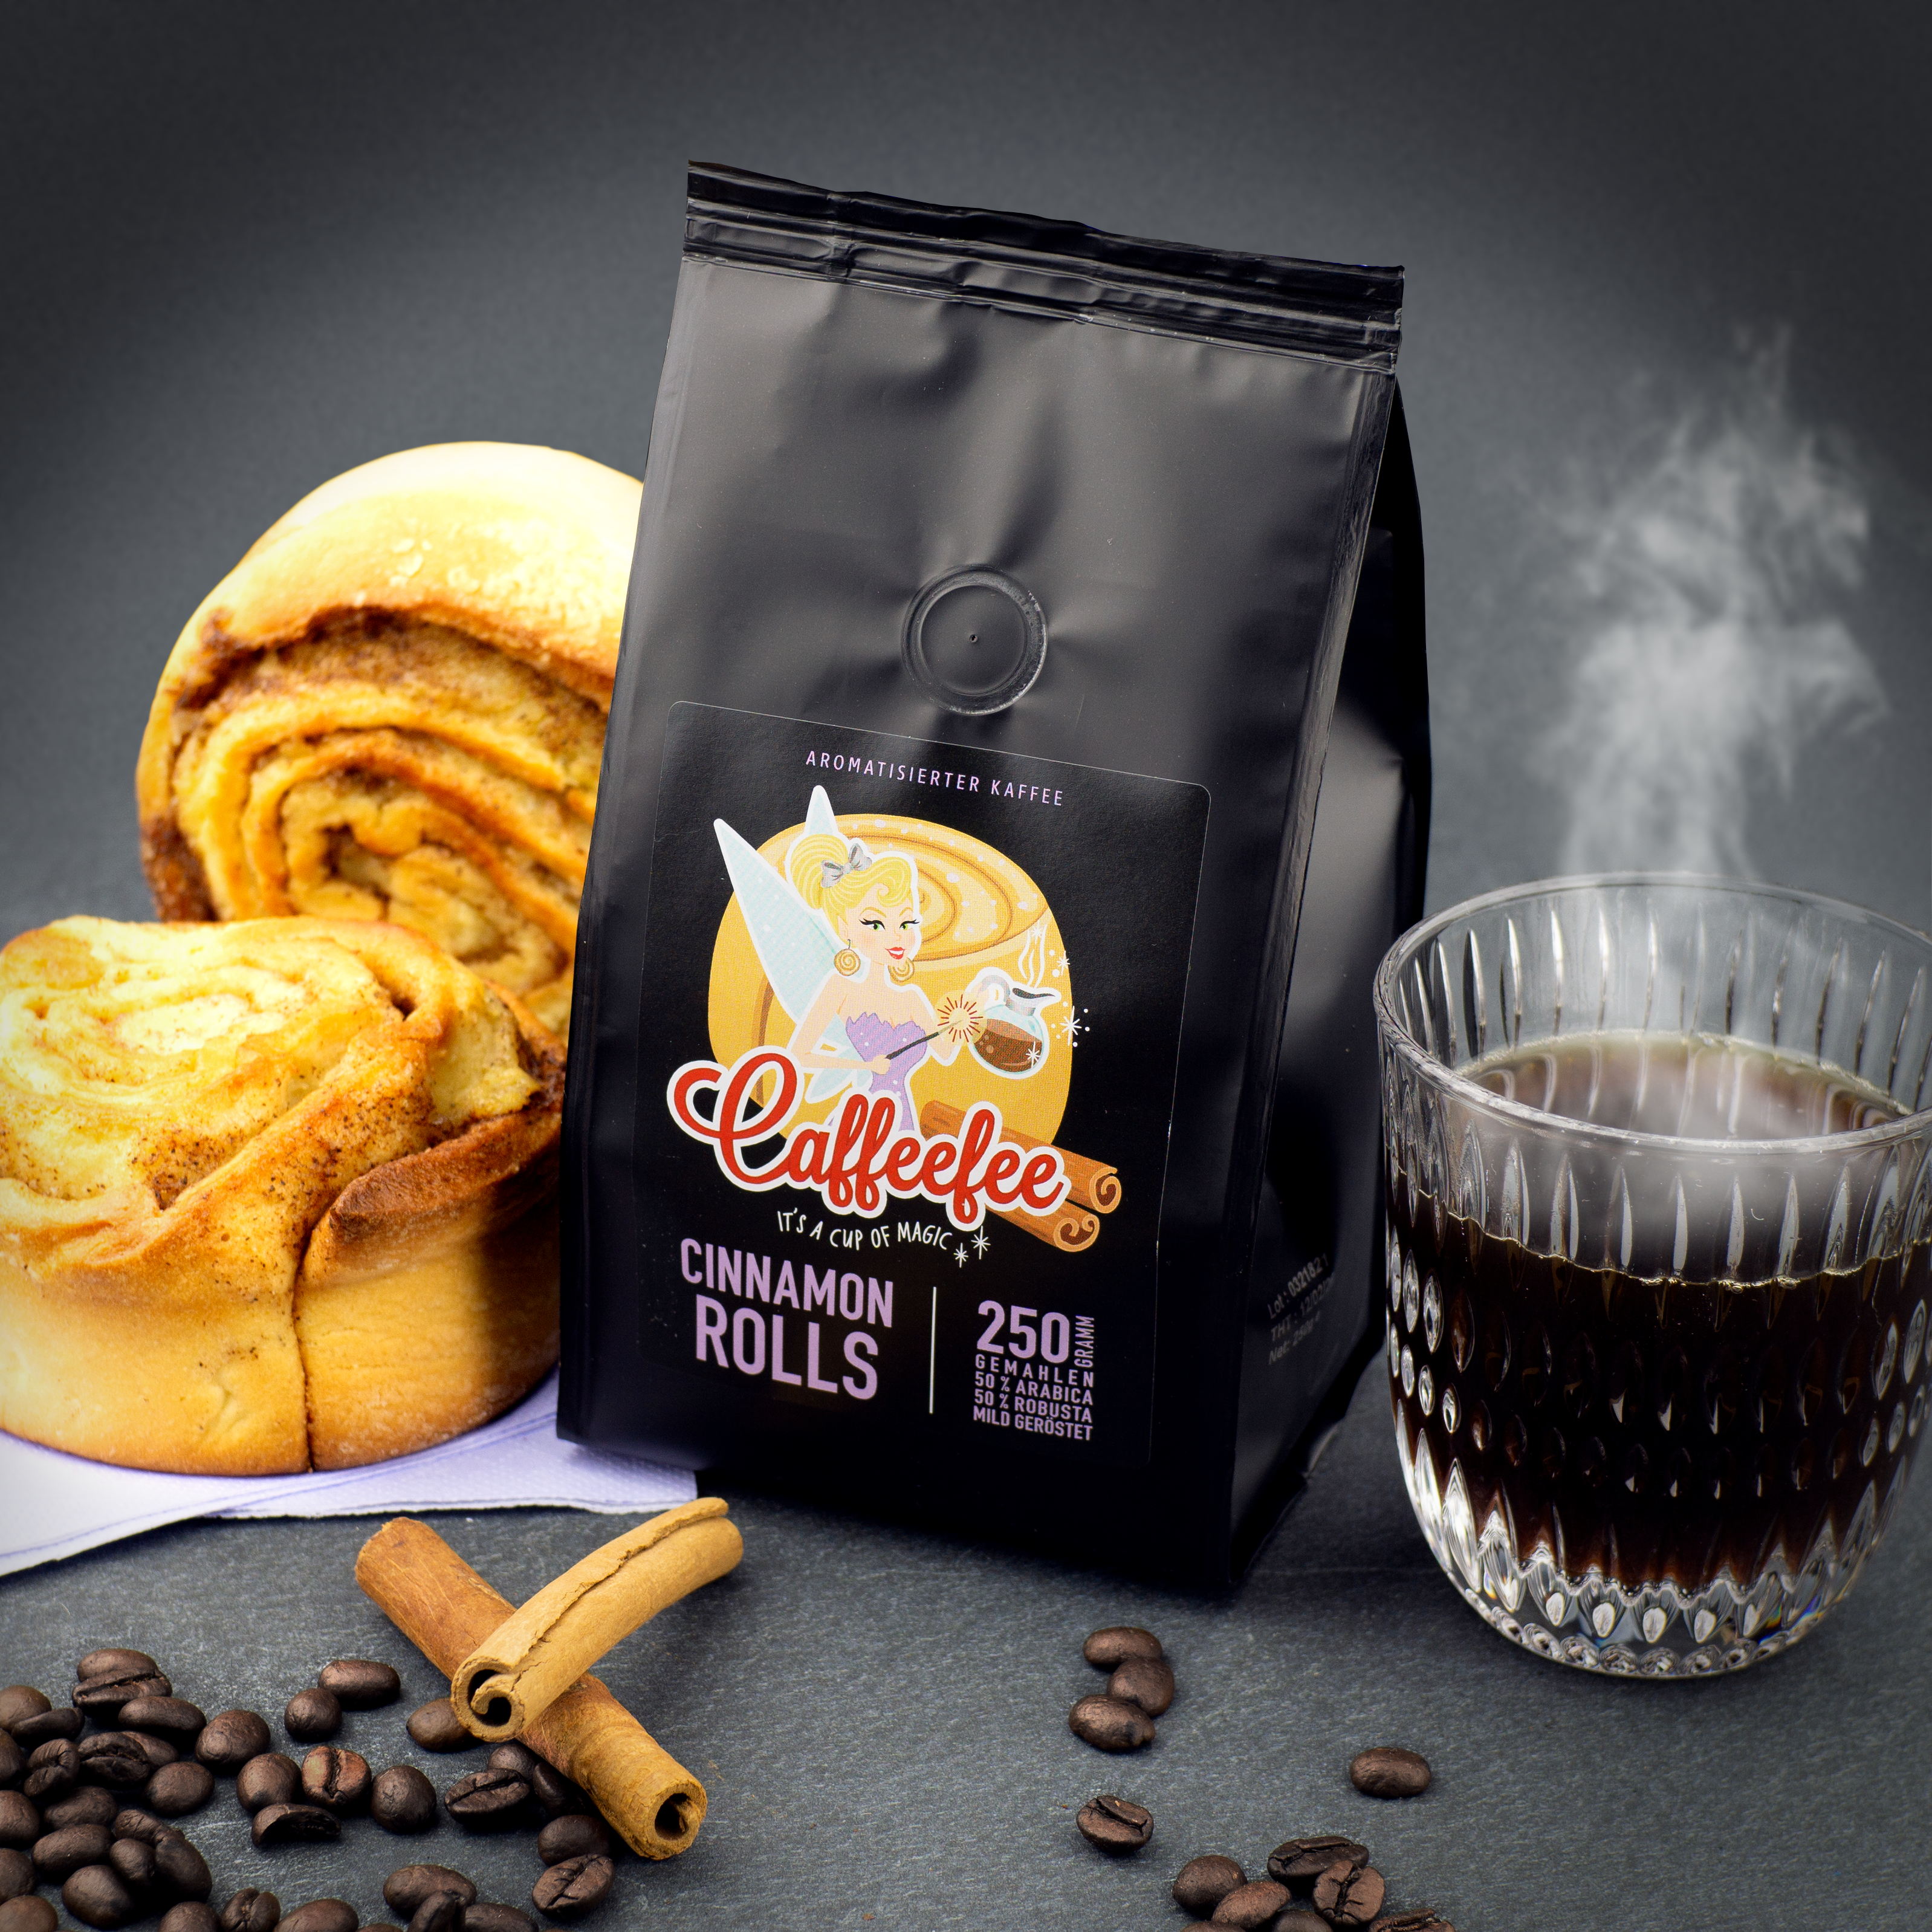 Päckchen Caffeefee Cinnamon Rolls, daneben zwei Zimtschnecken und eine Tasse mit frisch gebrühten Kaffee. Im Vordergrund Kaffeebohnen und Zimtstangen.